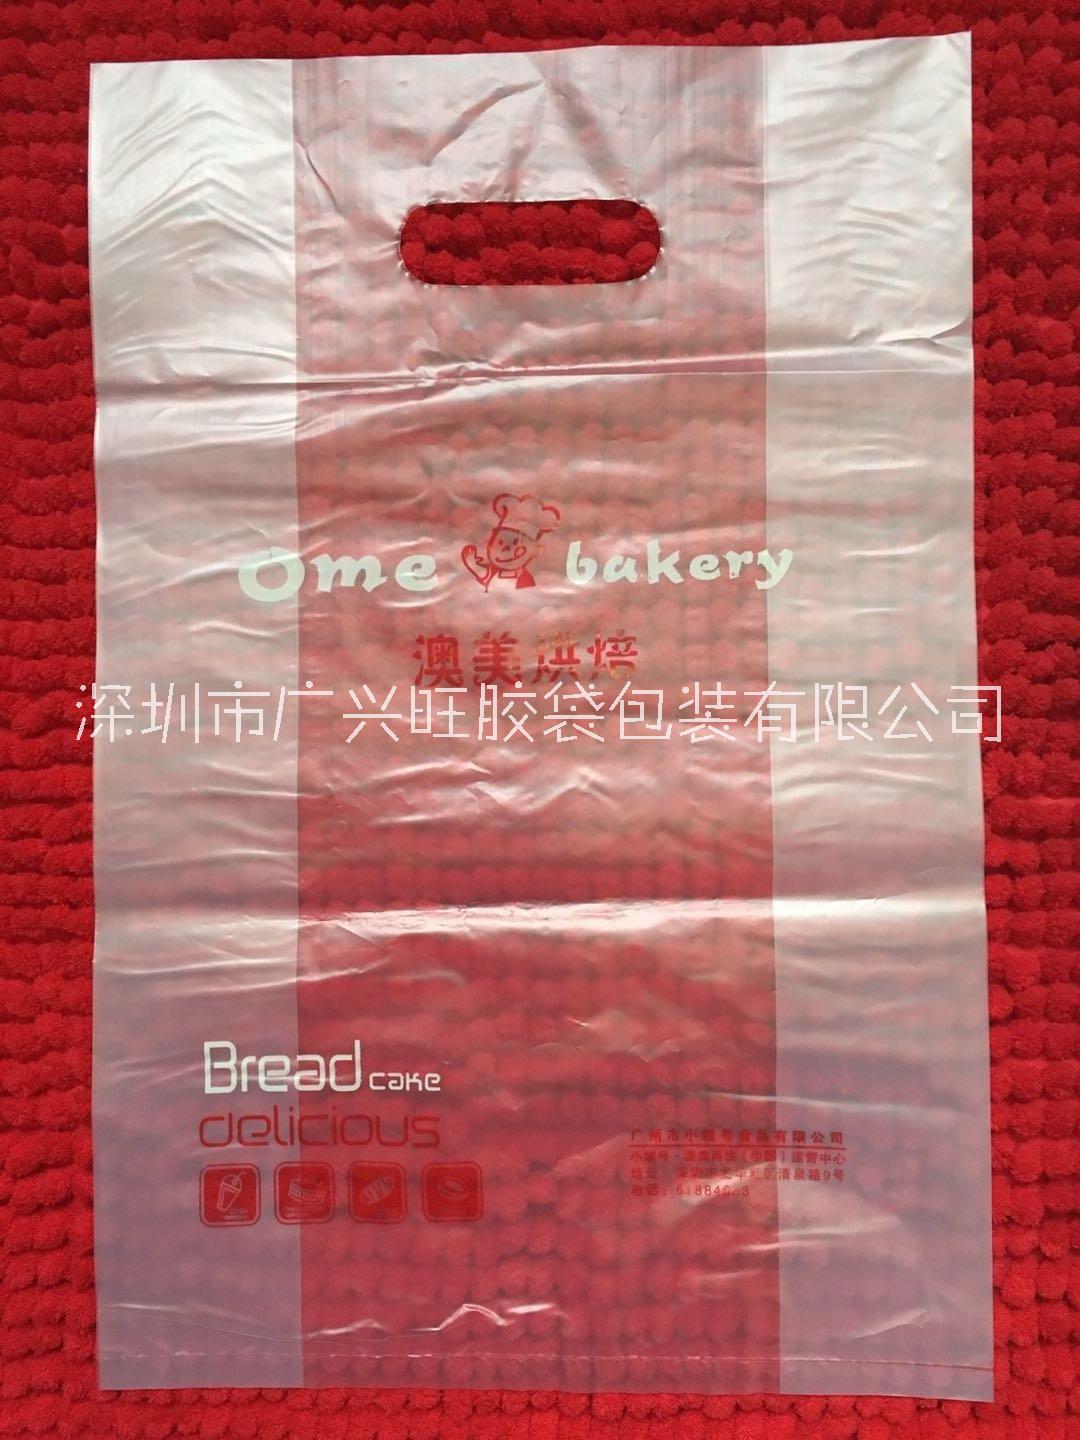 面包袋定制 面包店胶袋 环保透明面包店塑料袋 深圳市广兴旺胶袋包装有限公司图片